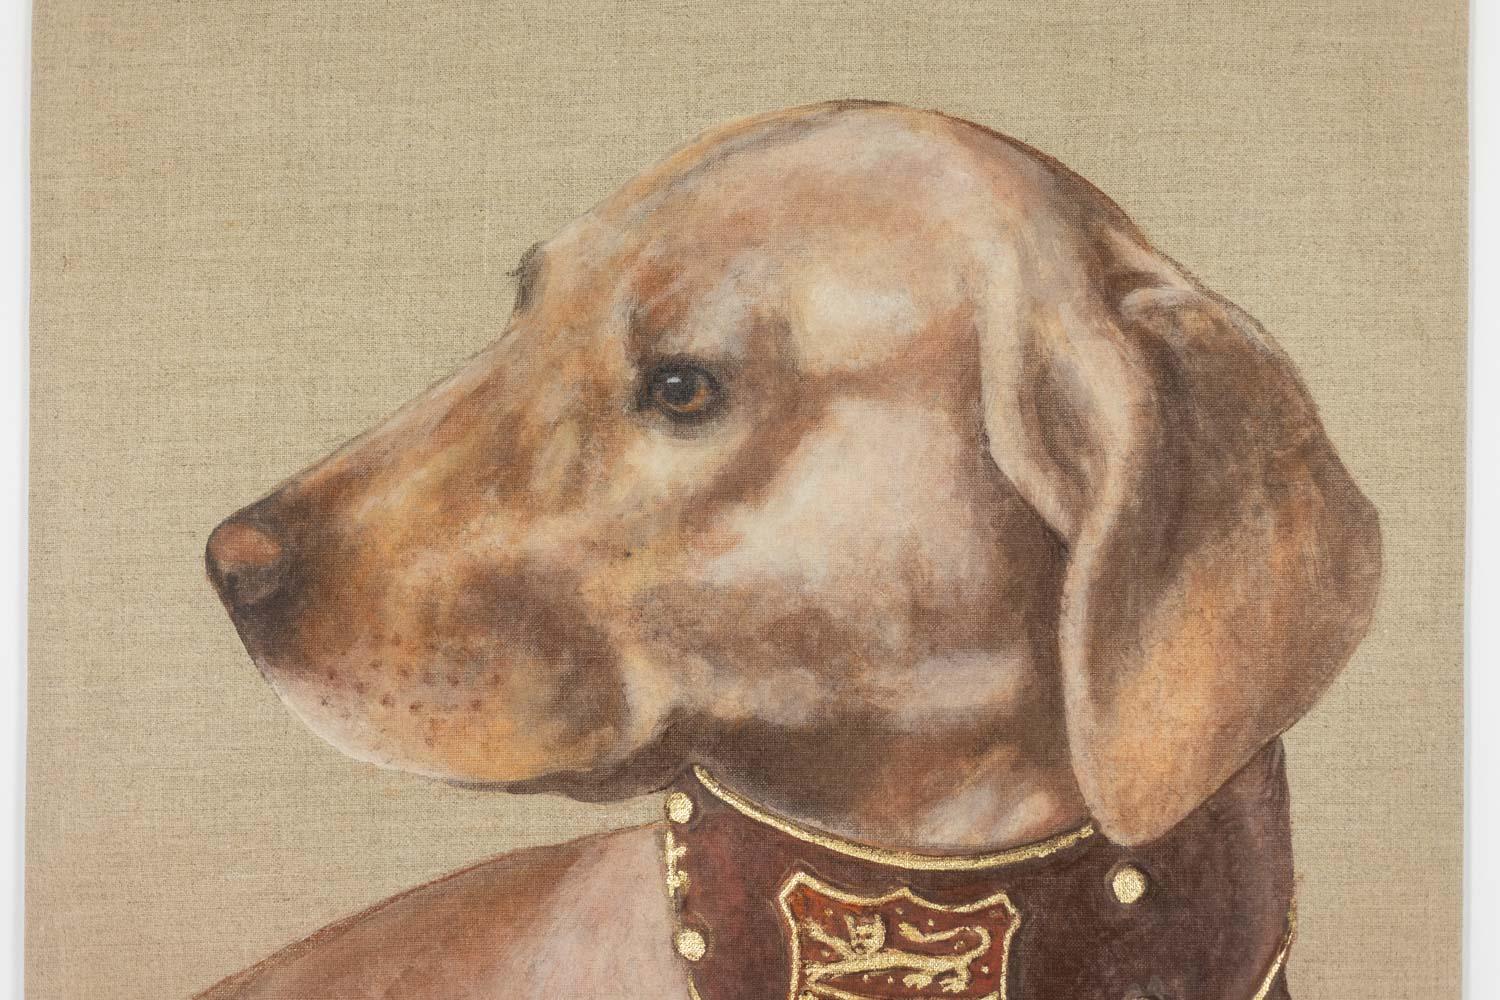 Toile peinte, ou panneau décoratif, représentant un chien, dont le collier est orné d'un écusson dans les tons chocolat et or.

Œuvres contemporaines d'artistes français.

Référence : LS5989456Y